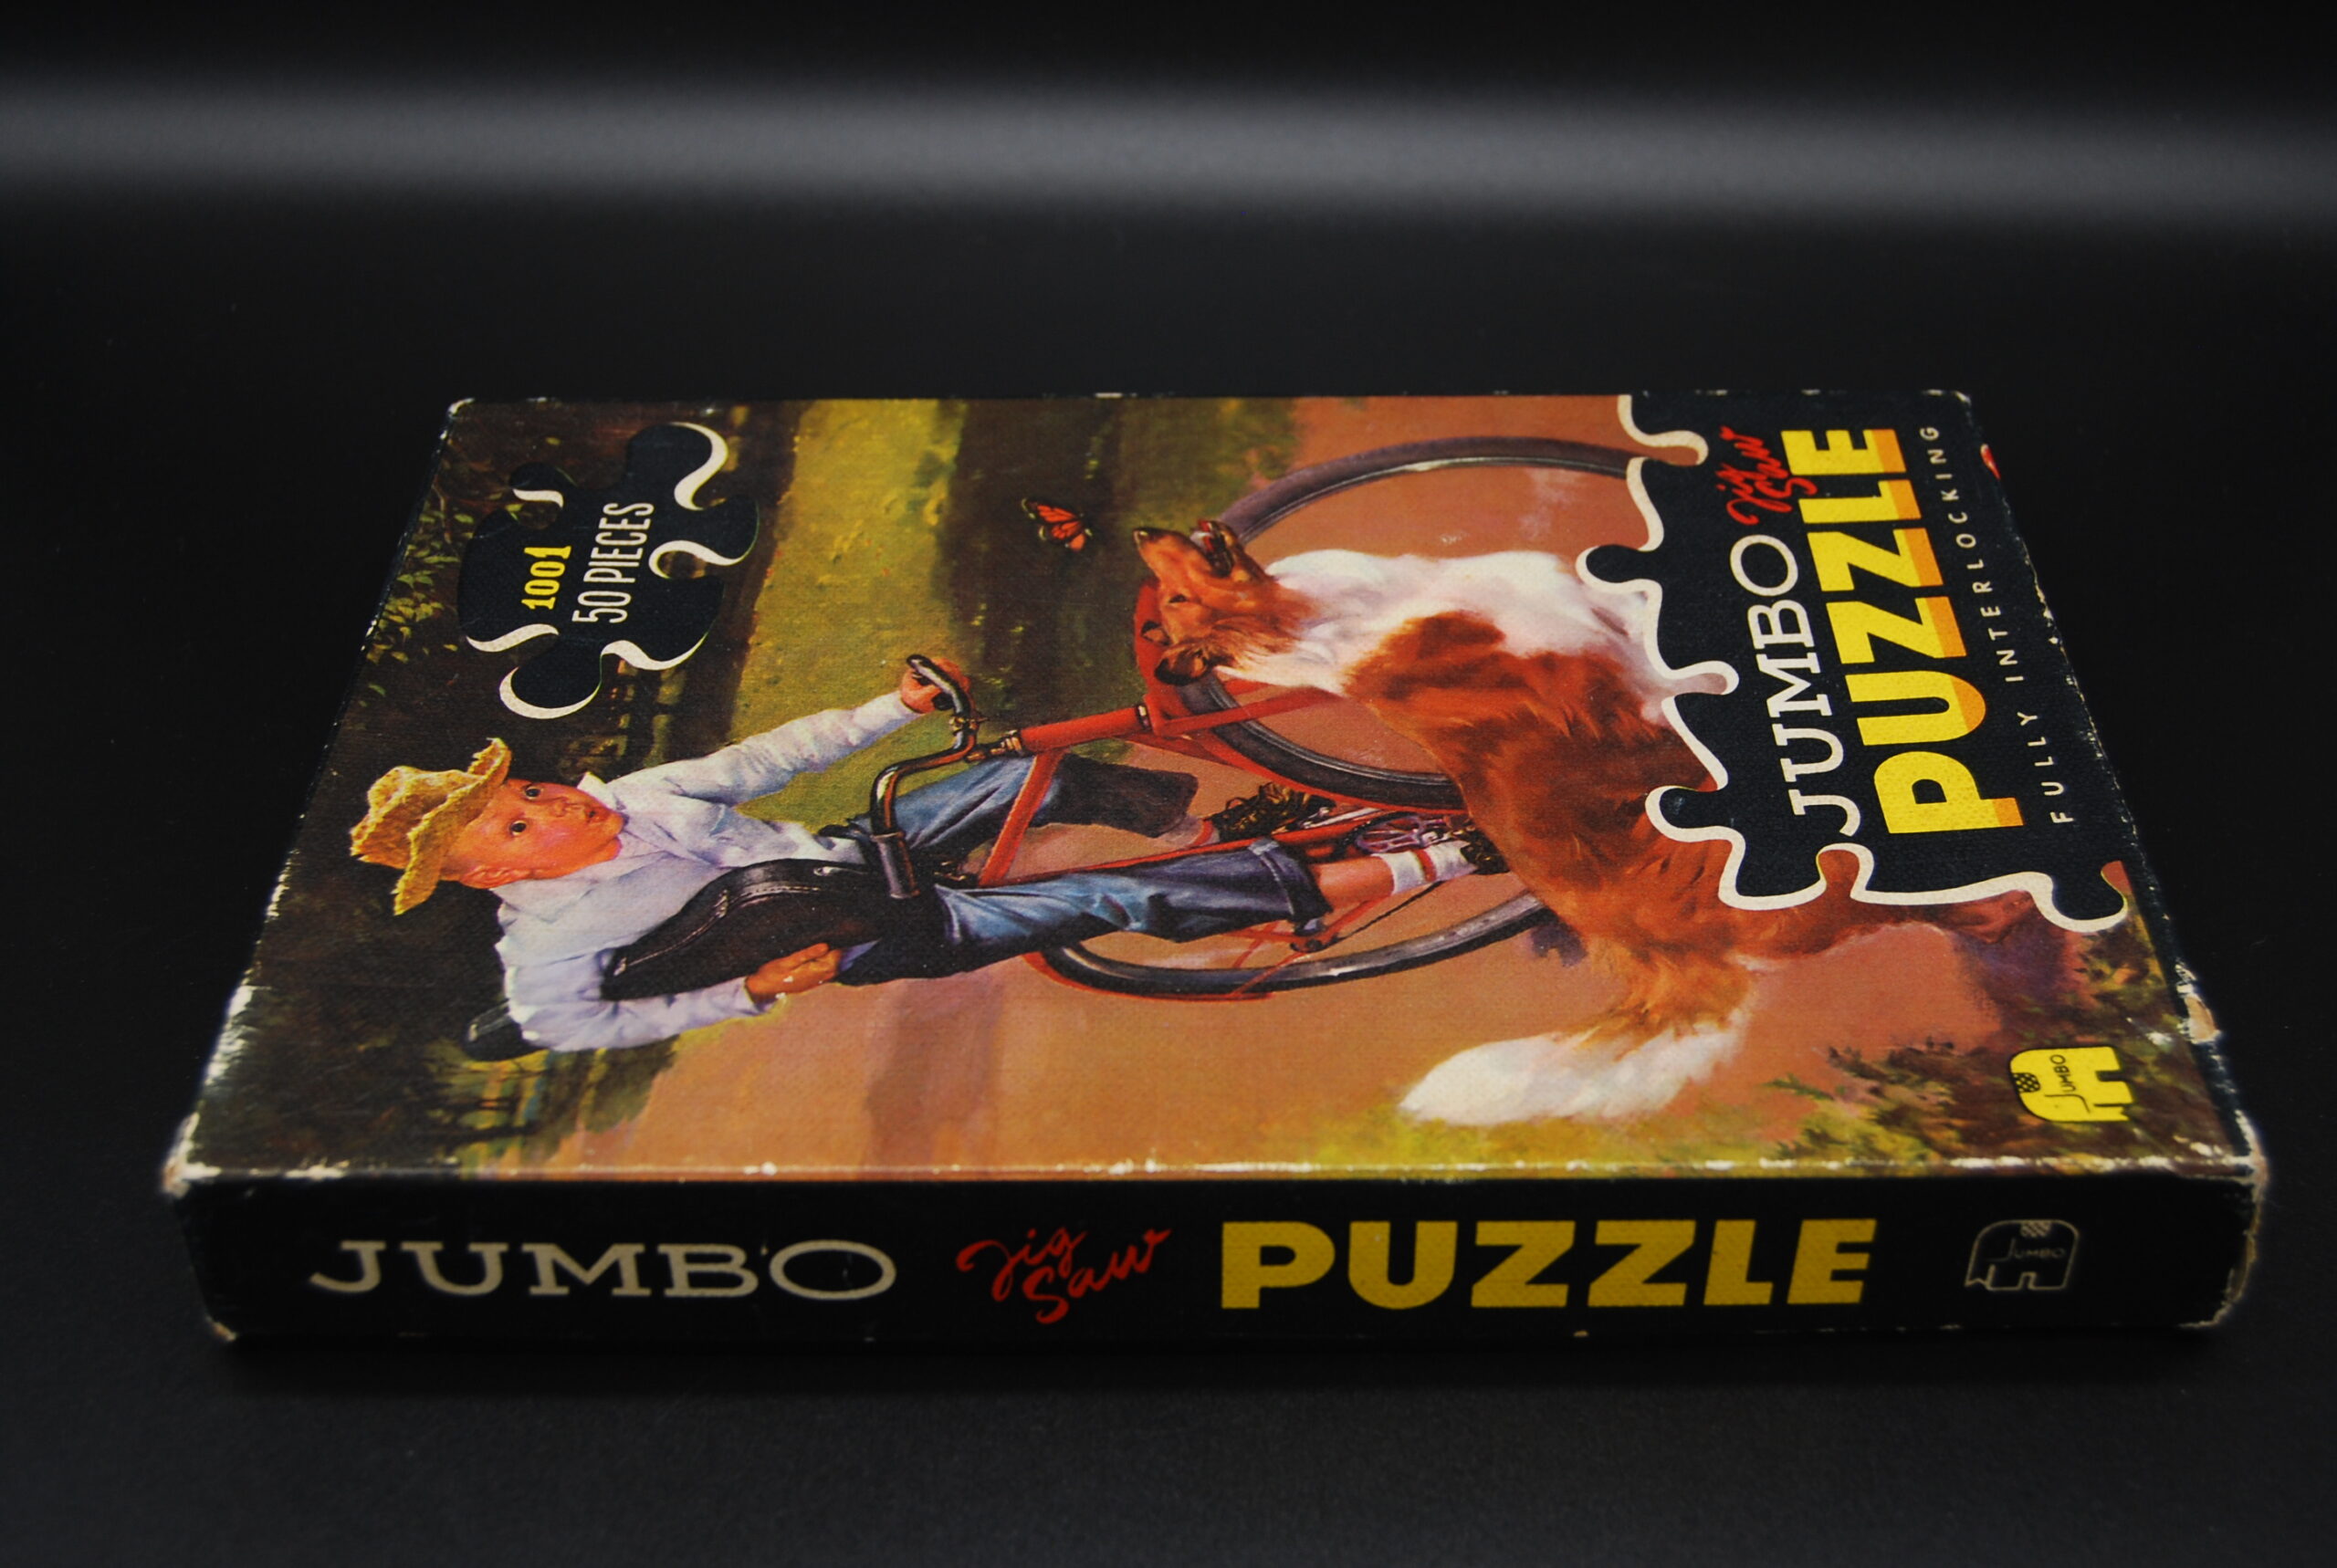 Vintage puzzel Jumbo fietsende jongen-hond|What's New Today?